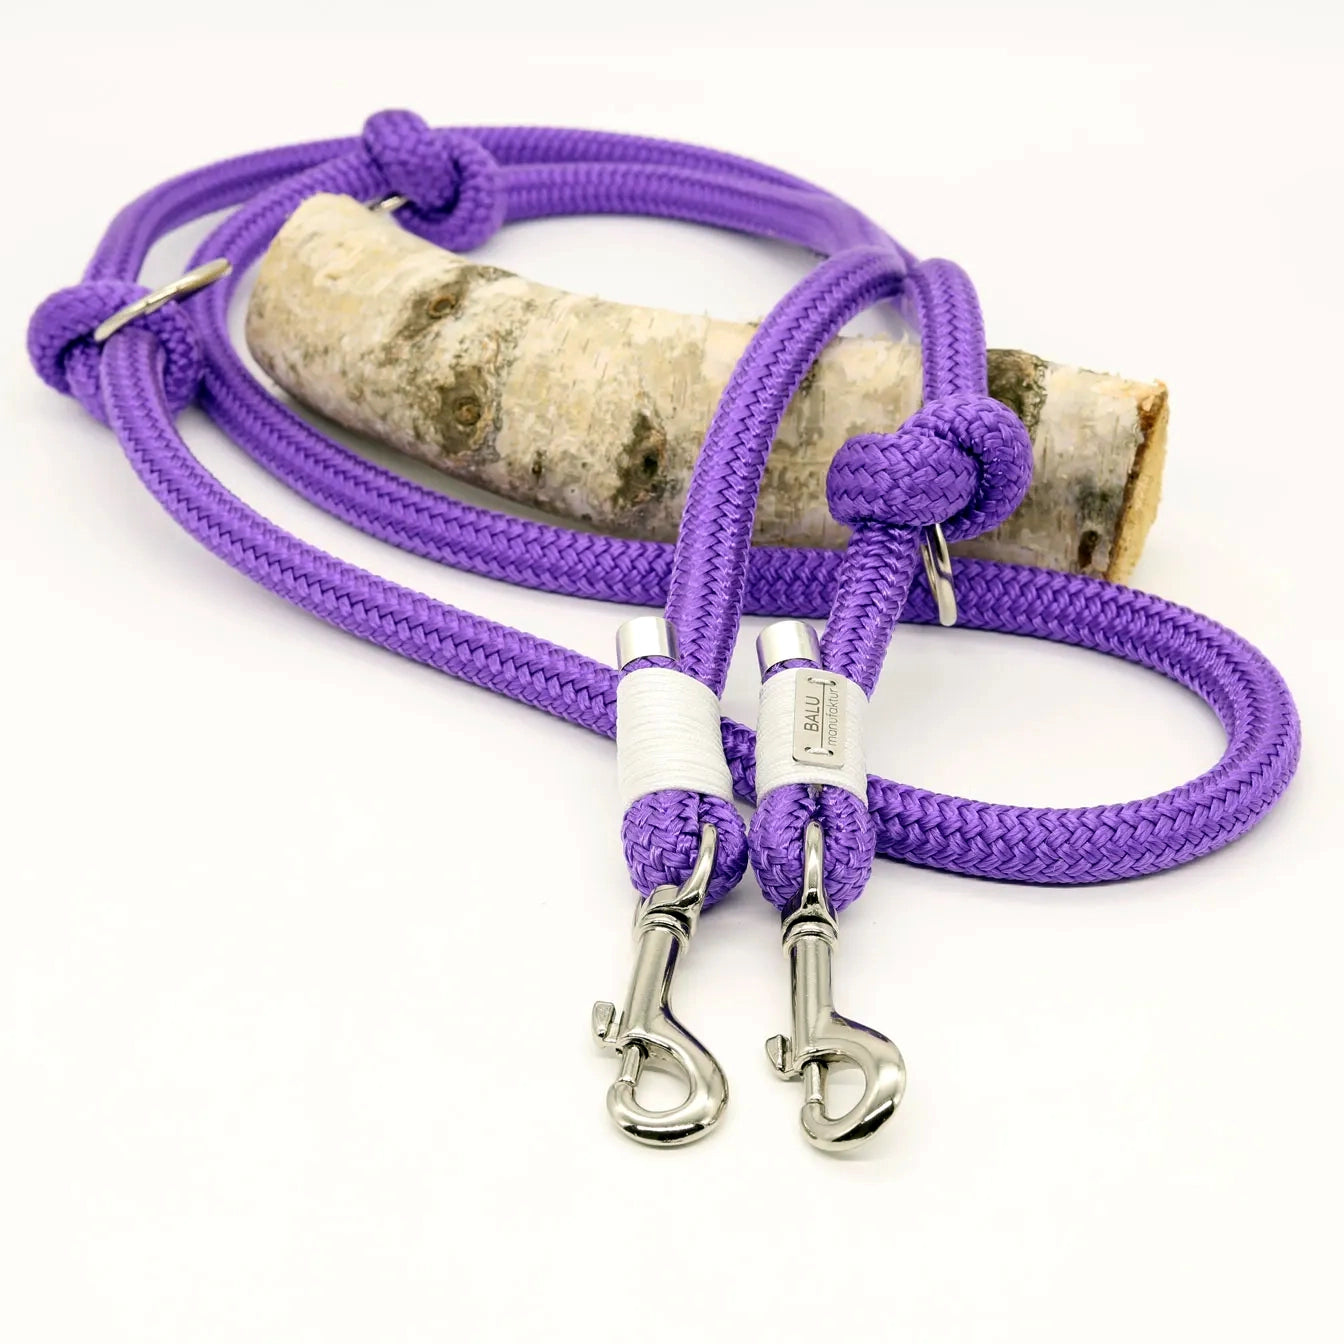 Verstellbare Hundeleine aus Seil 2m in lila mit silbernen Metallelementen